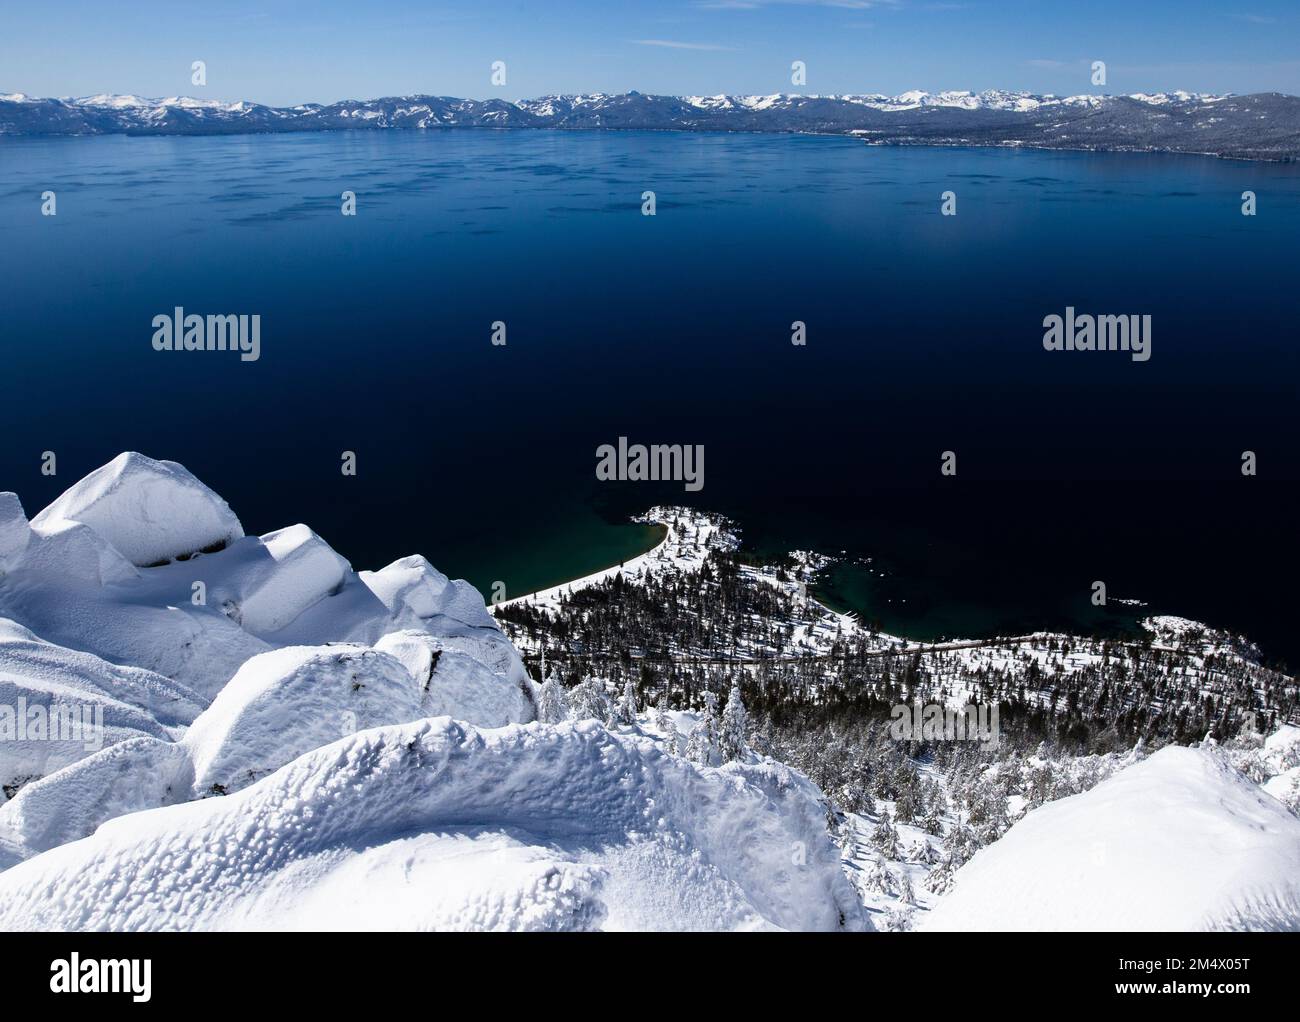 Neige fraîche sur les hauts sommets de montagne, un magnifique paysage d'hiver. Lake Tahoe, Californie. Banque D'Images